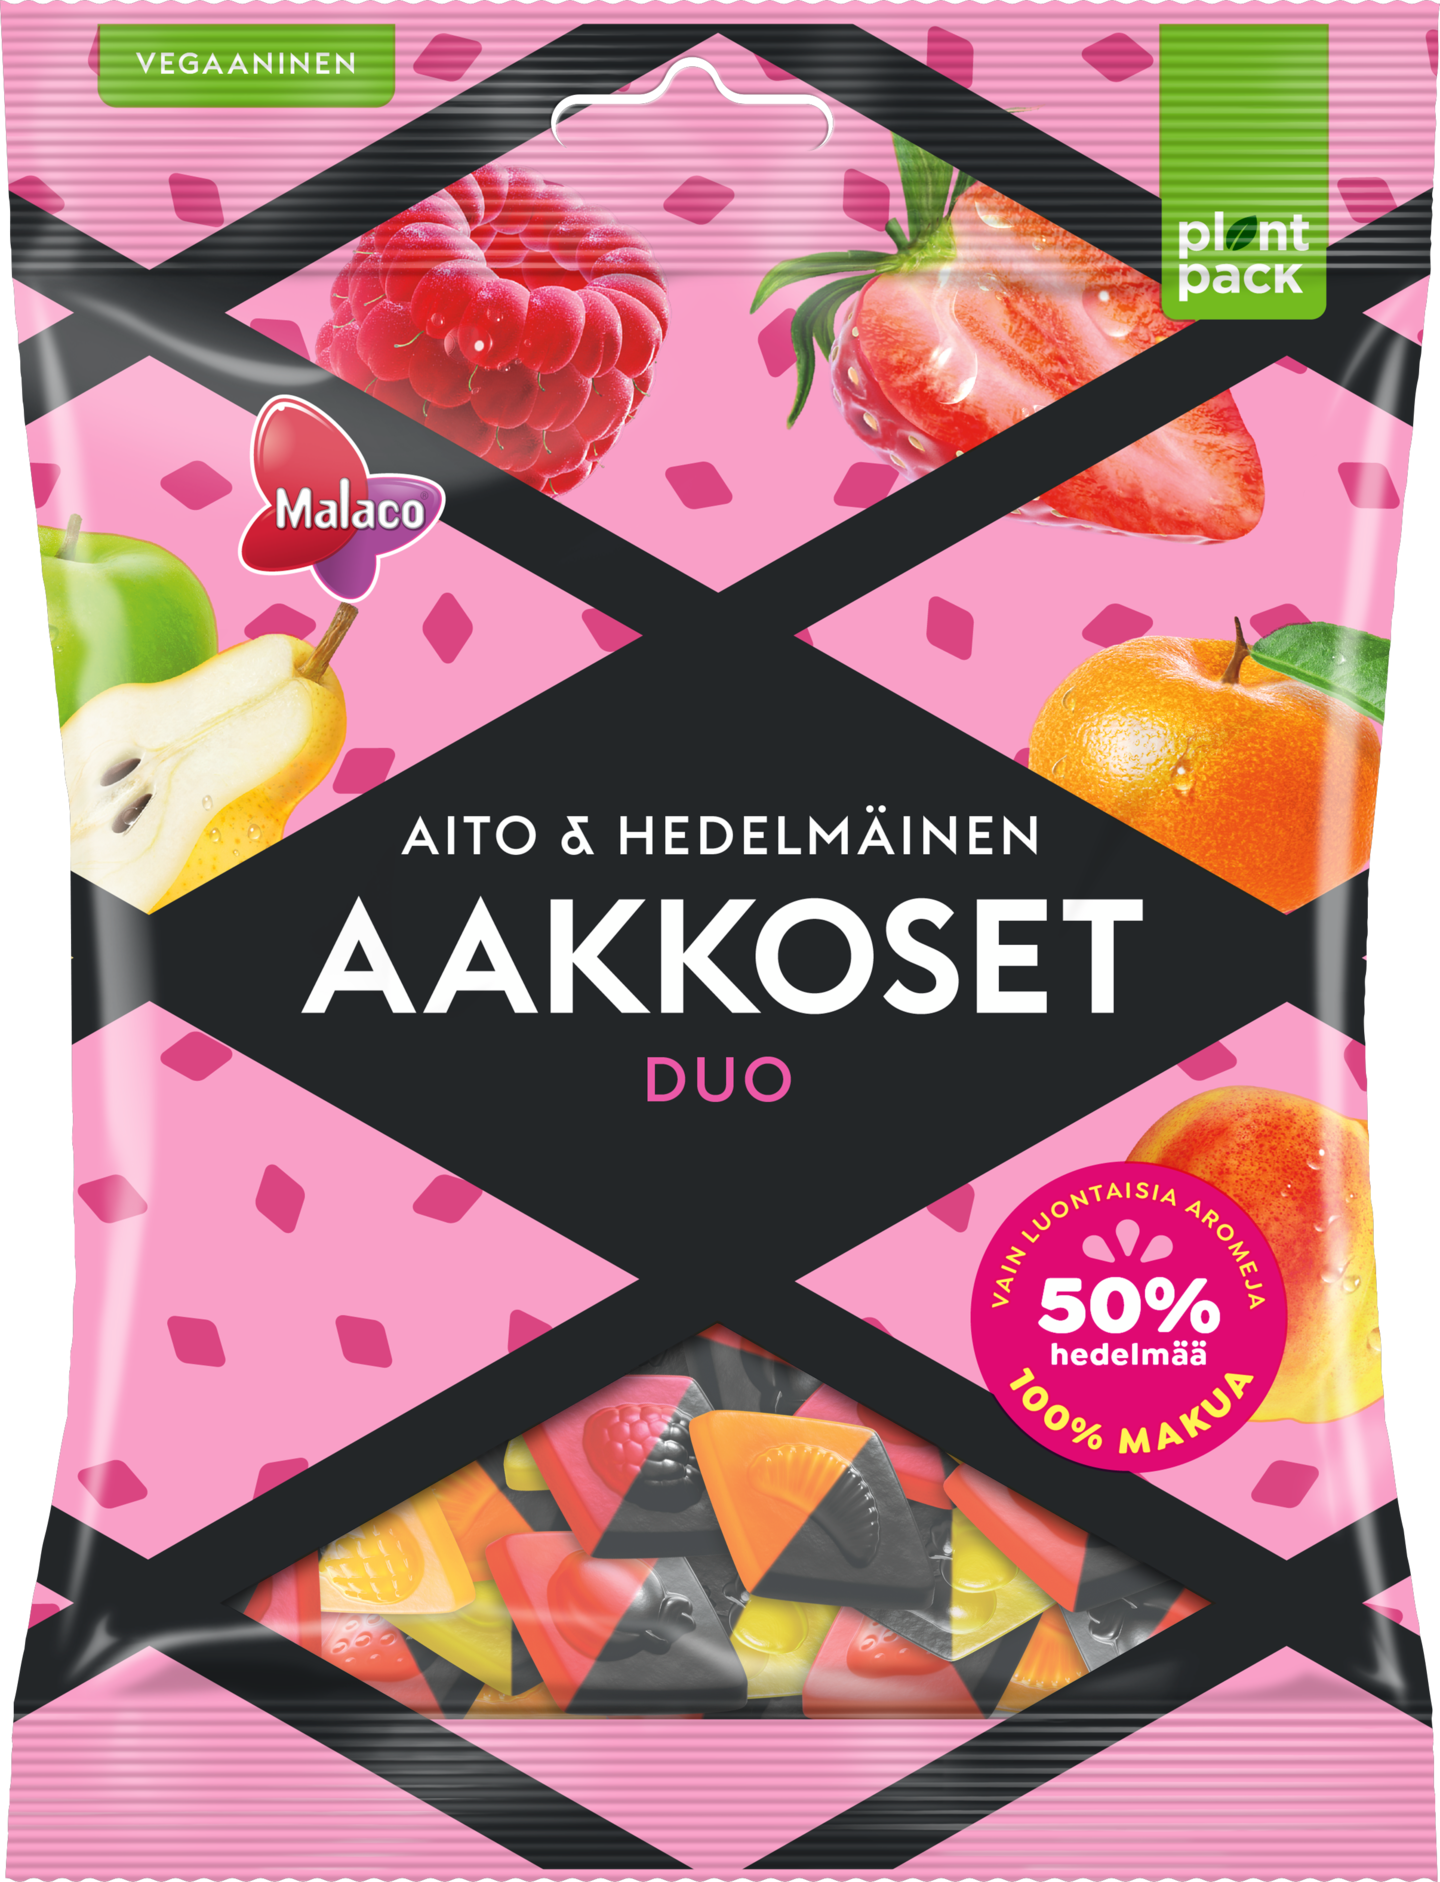 Malaco Aakkoset 230g Aito&Hedelmäinen Duo karkkipussi